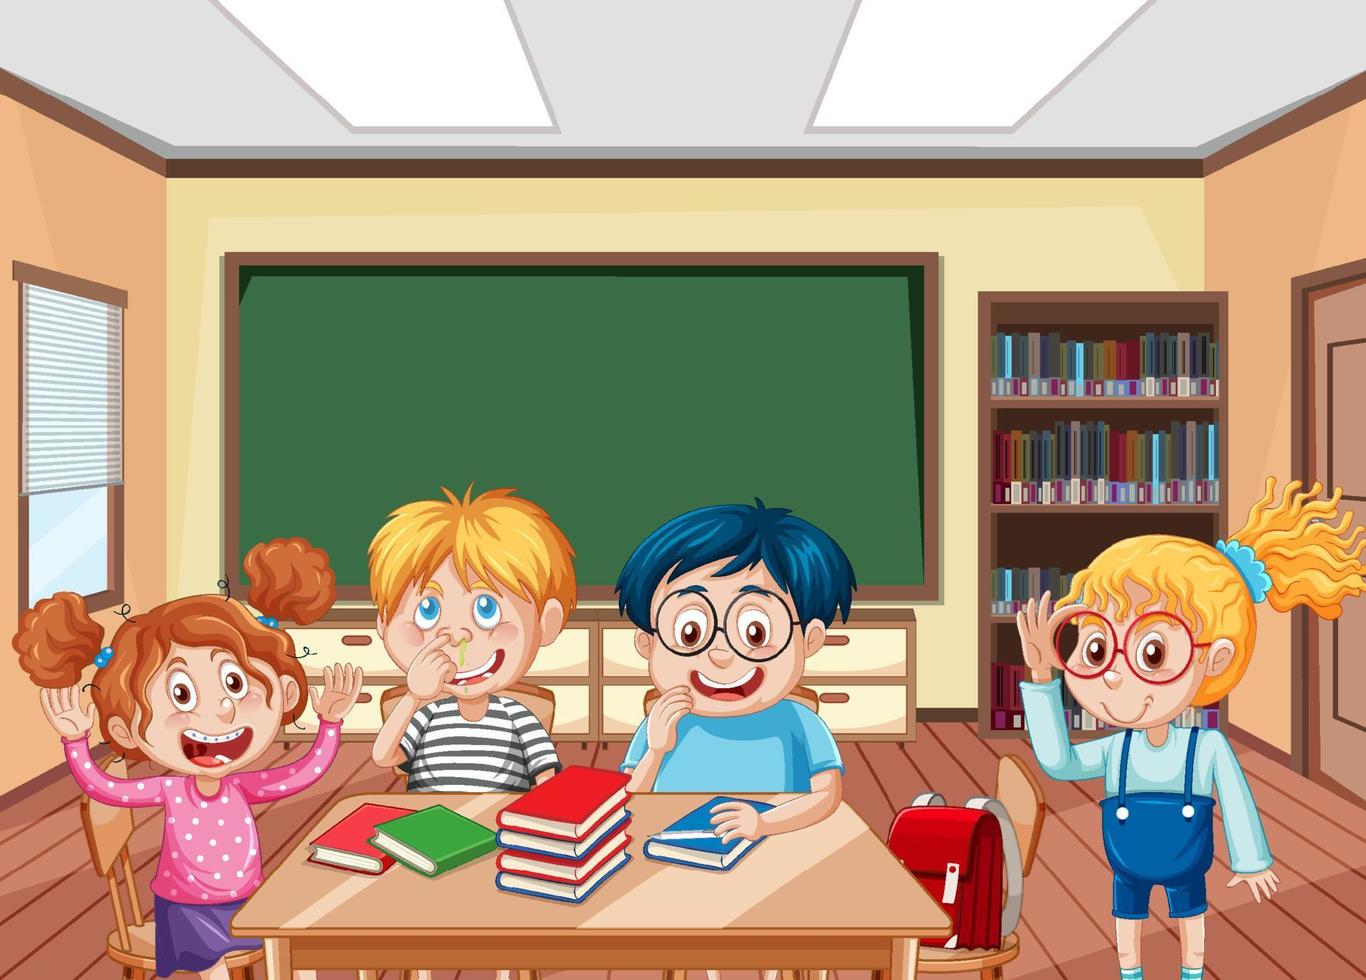 skolklassrumsscen med glada studenter seriefigur vektor